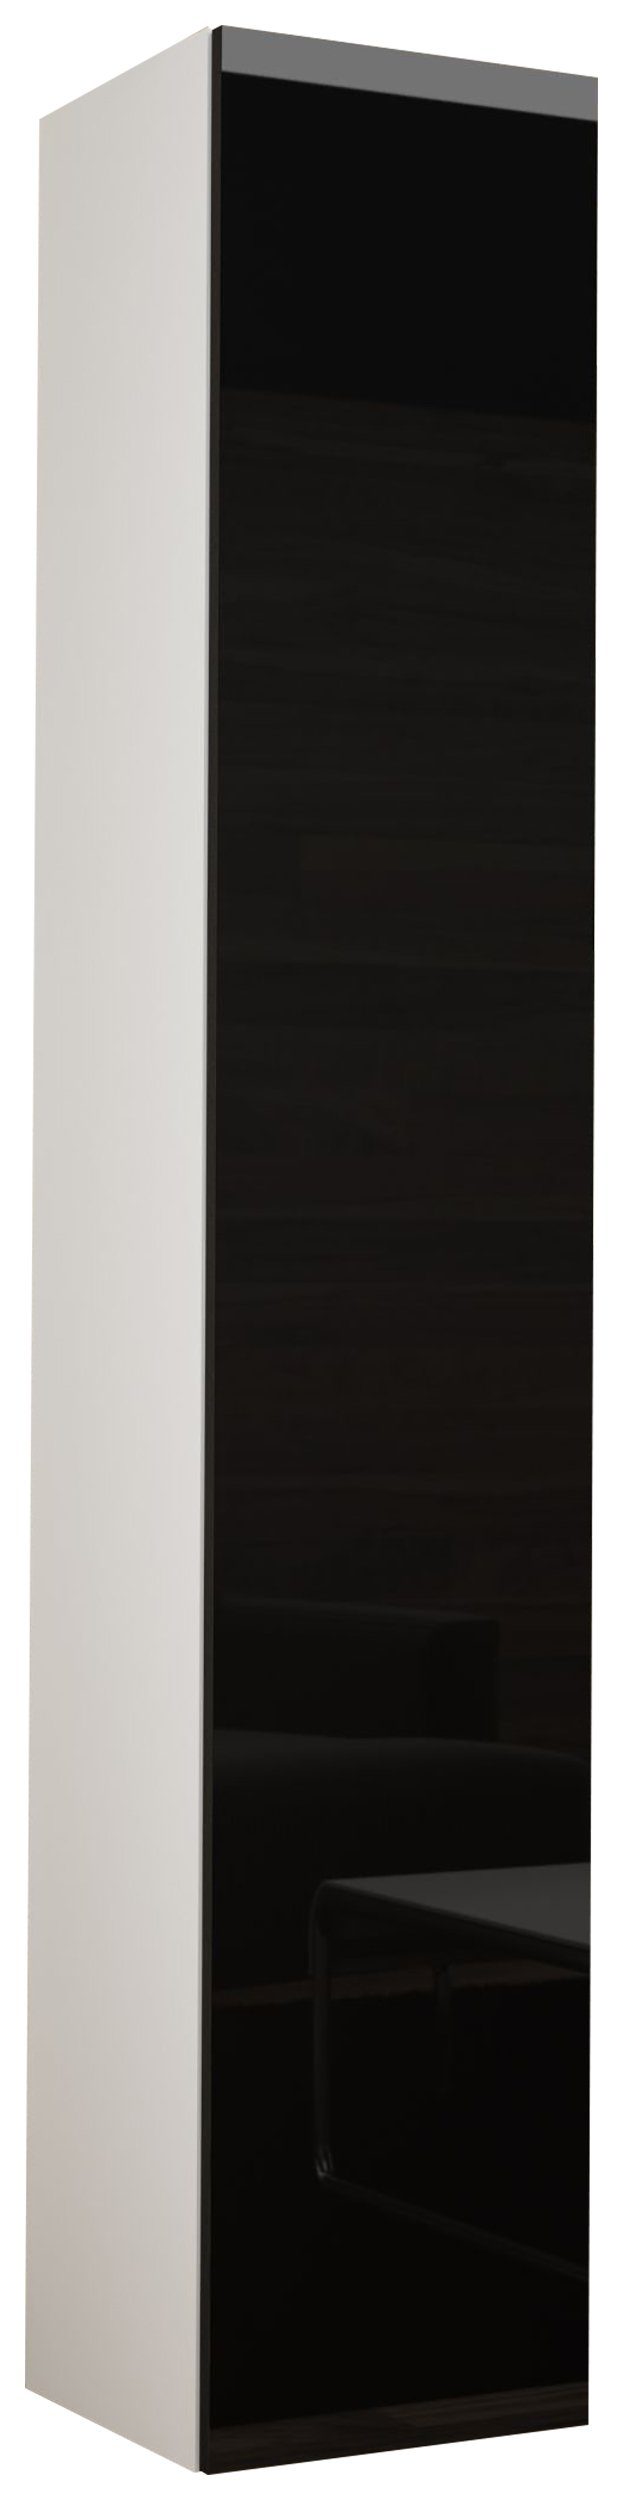 Stylefy Stauraumschrank Vago Full 180 cm (Wandschrank, Wandregal) viel Stauraum, mit Push-to-Open, Hochglanzfront, Modern Design Weiß/Schwarz